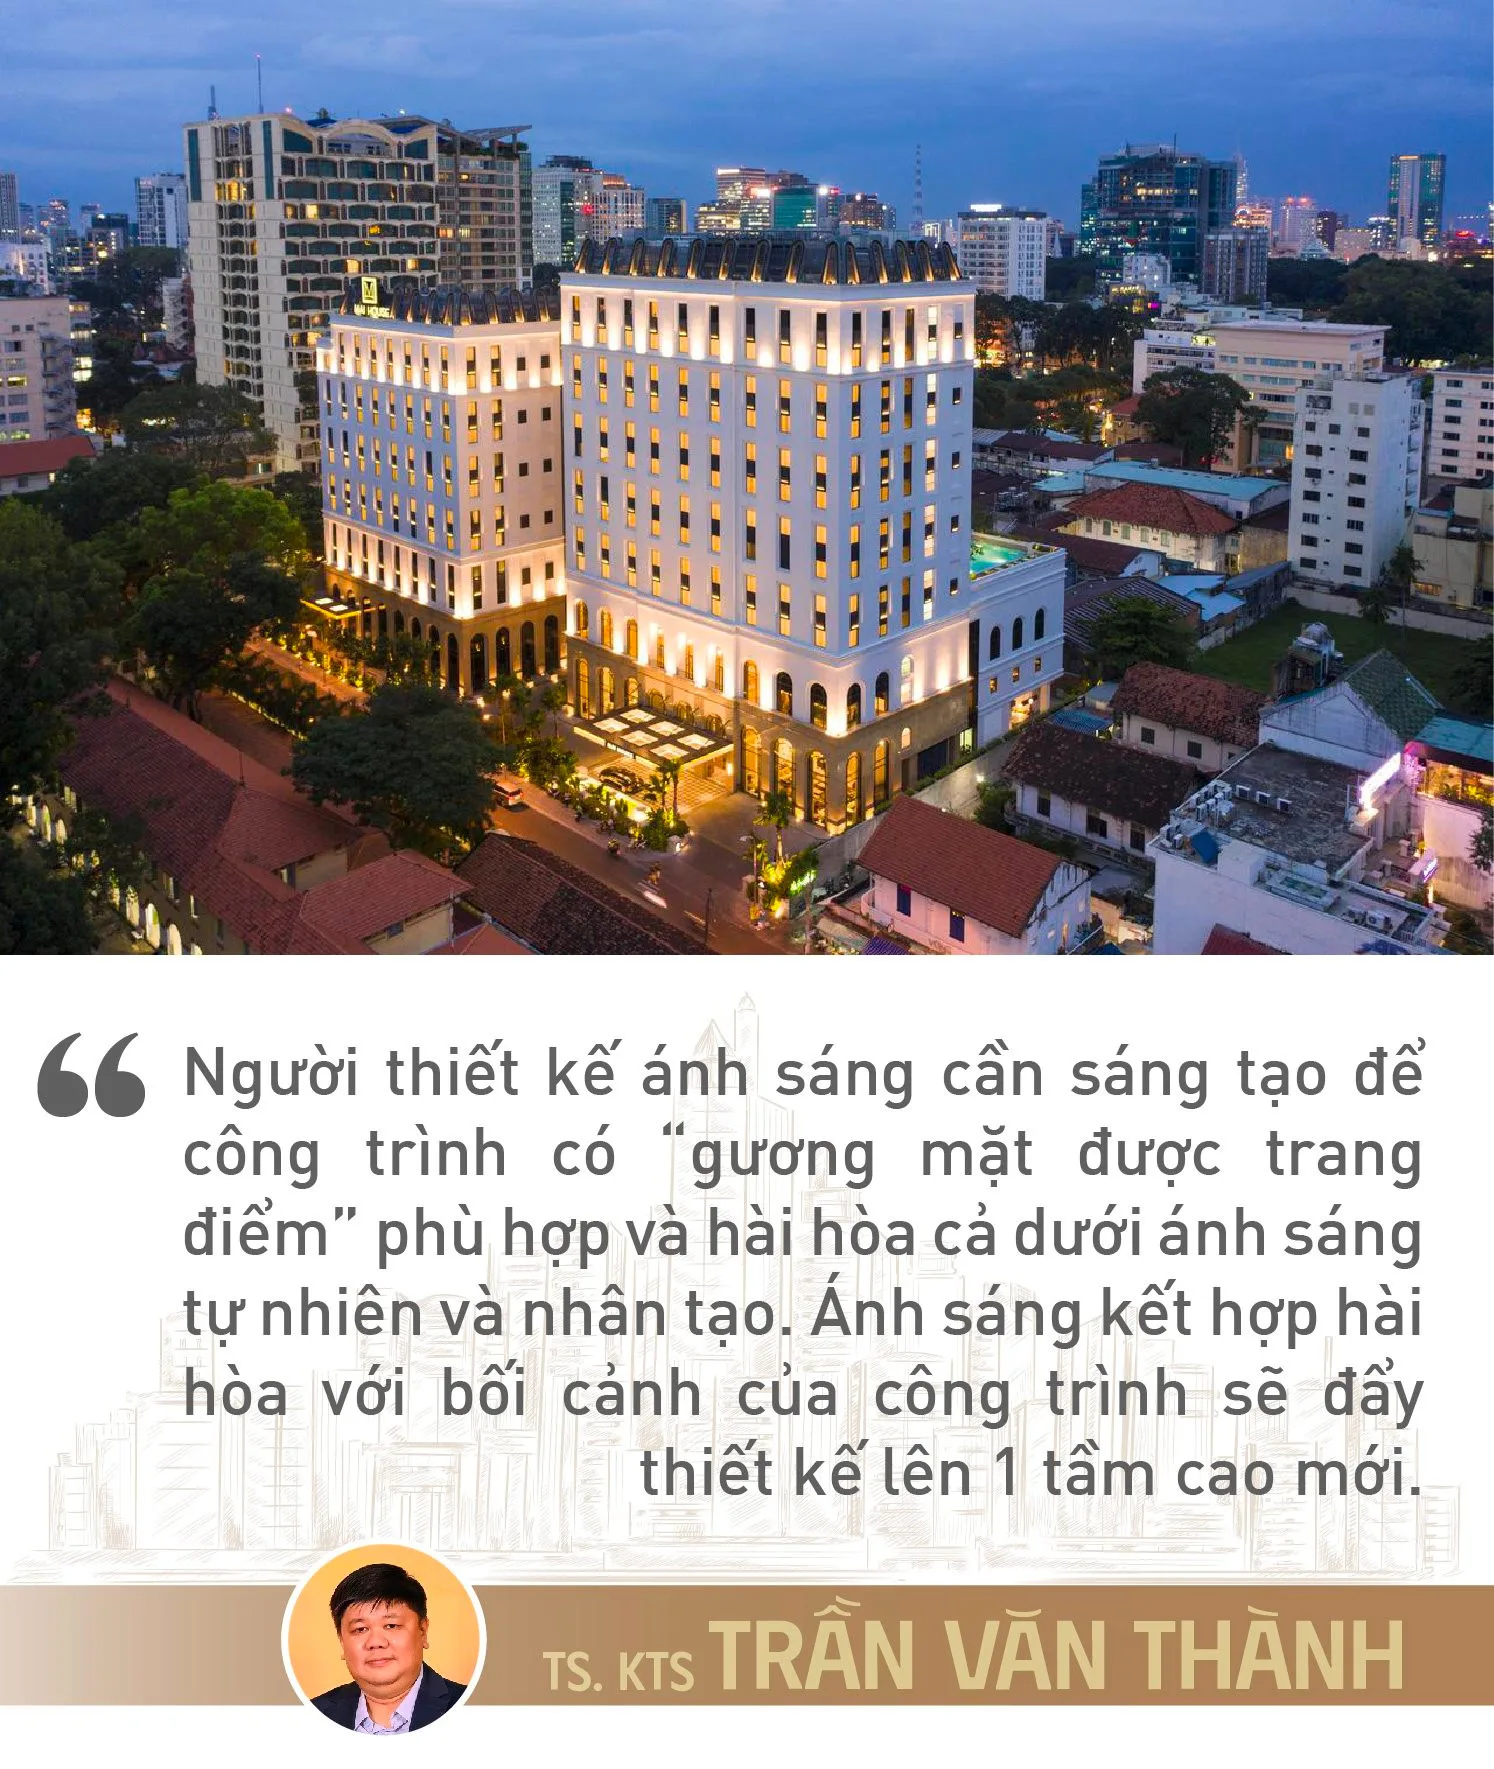 Cố vấn chiếu sáng cho các “ông lớn khách sạn” Trần Văn Thành: Thiết kế ánh sáng là “trang điểm” công trình mà thù lao được trả bằng một thứ không phải tiền bạc - Ảnh 7.